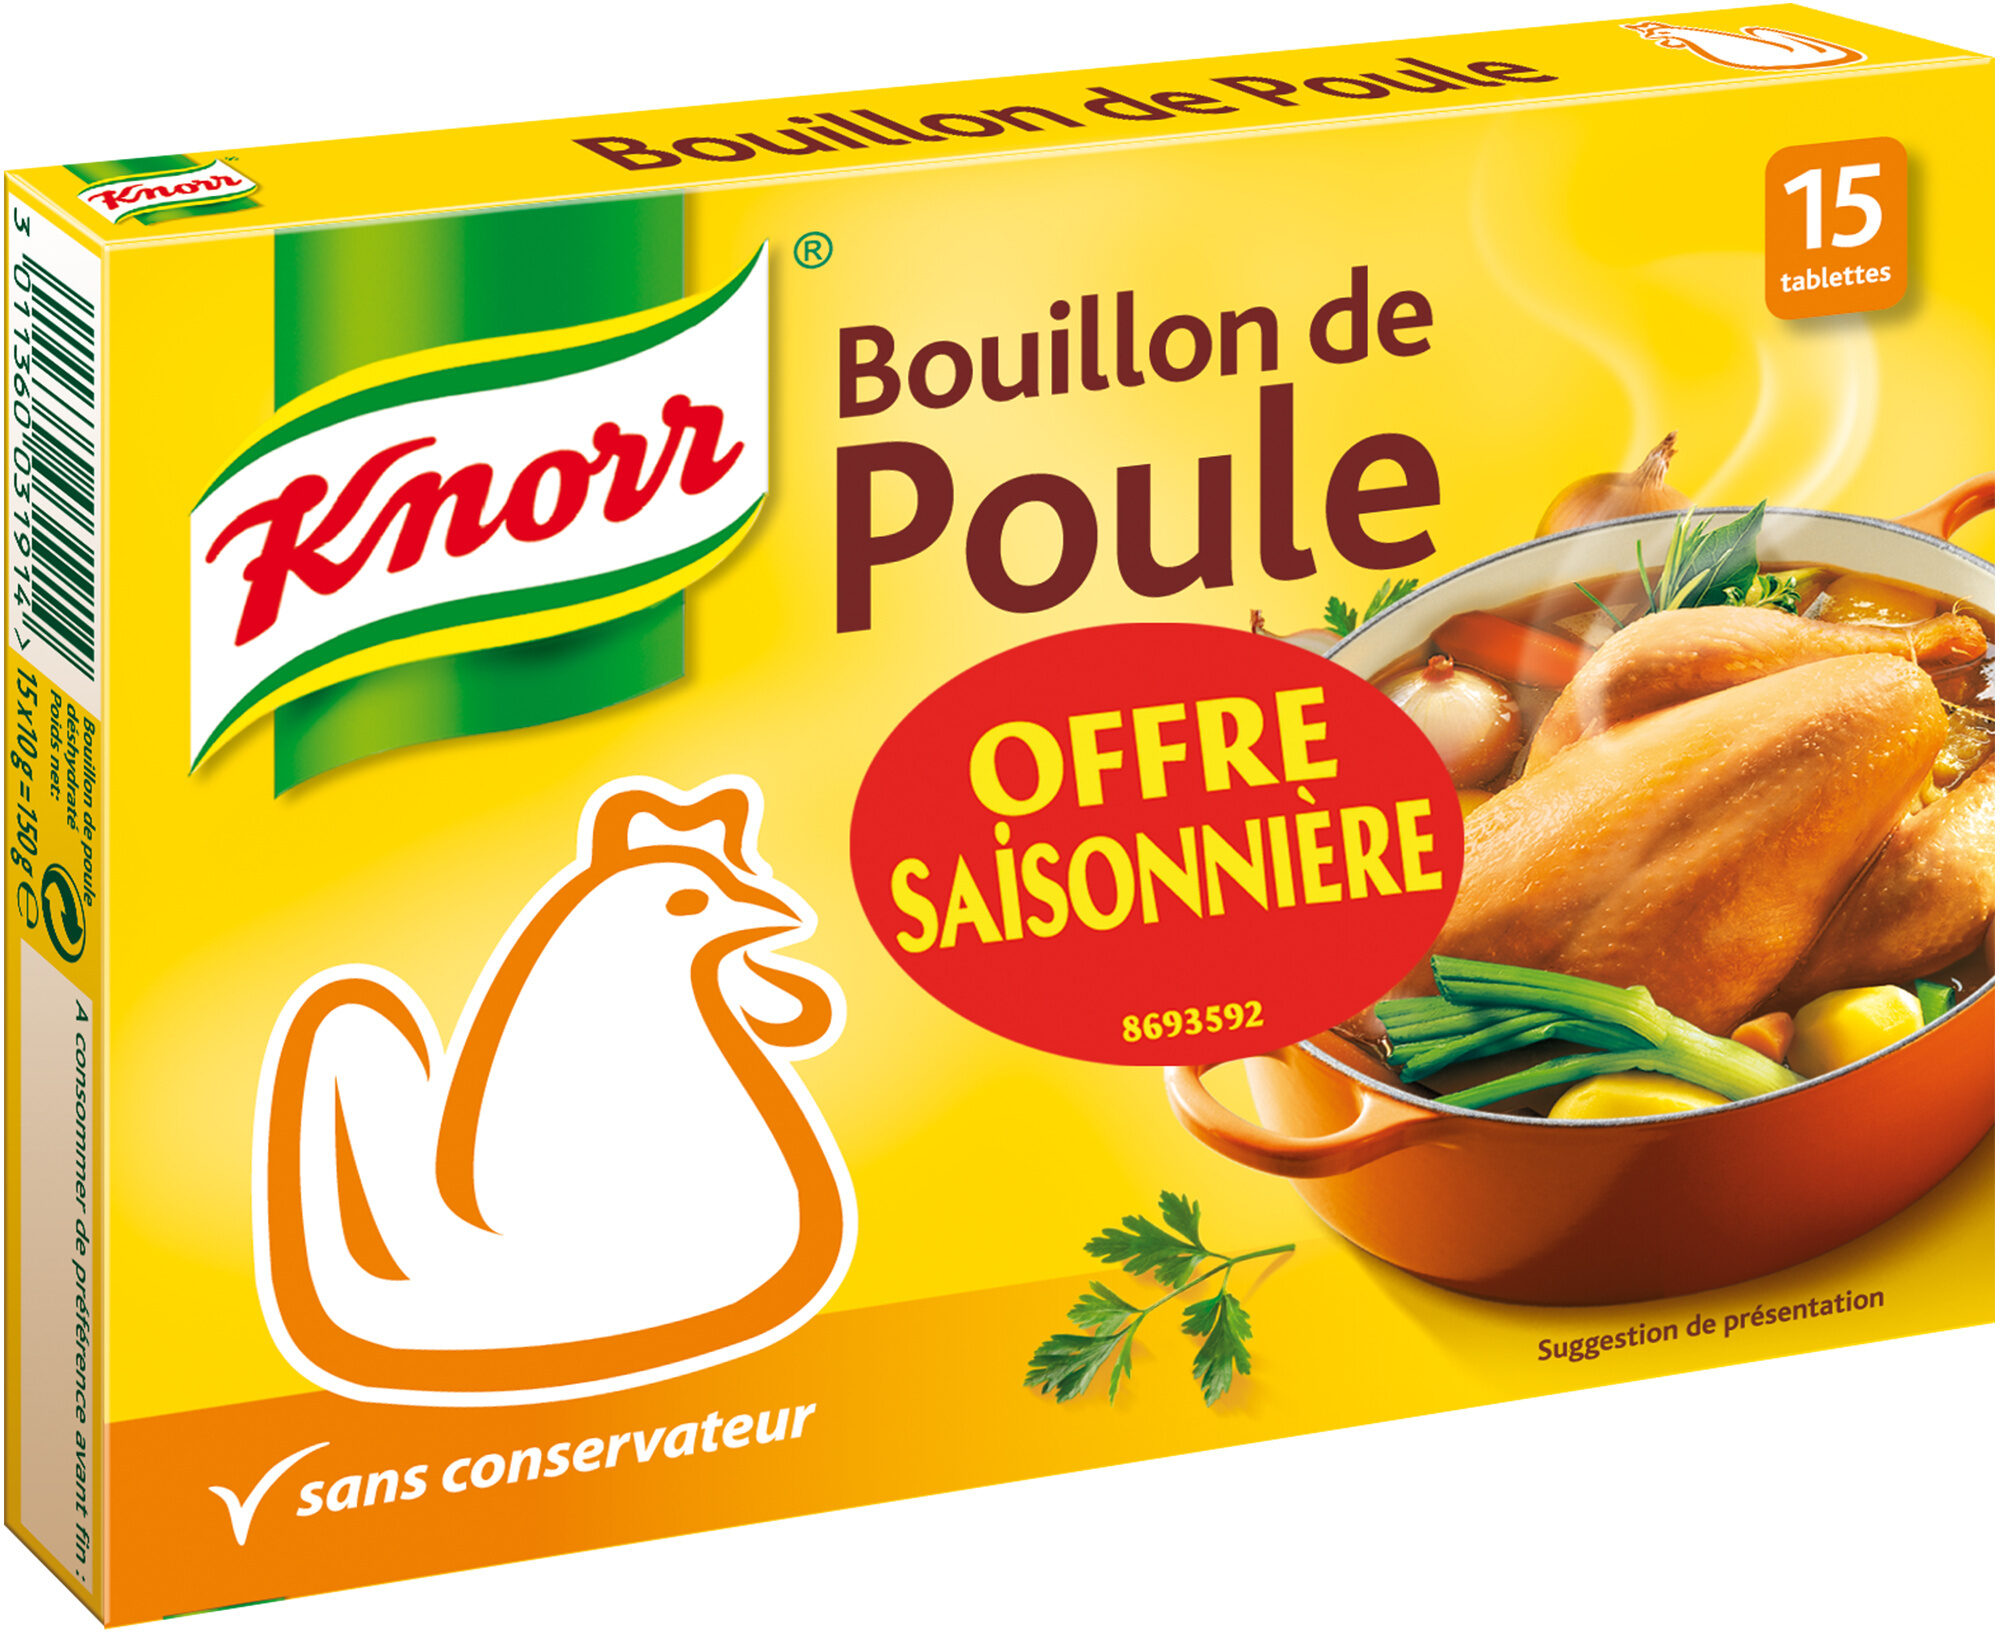 Knorr Bouillon Cube Poule - Offre Saisonniere 15 Tablettes - Produit